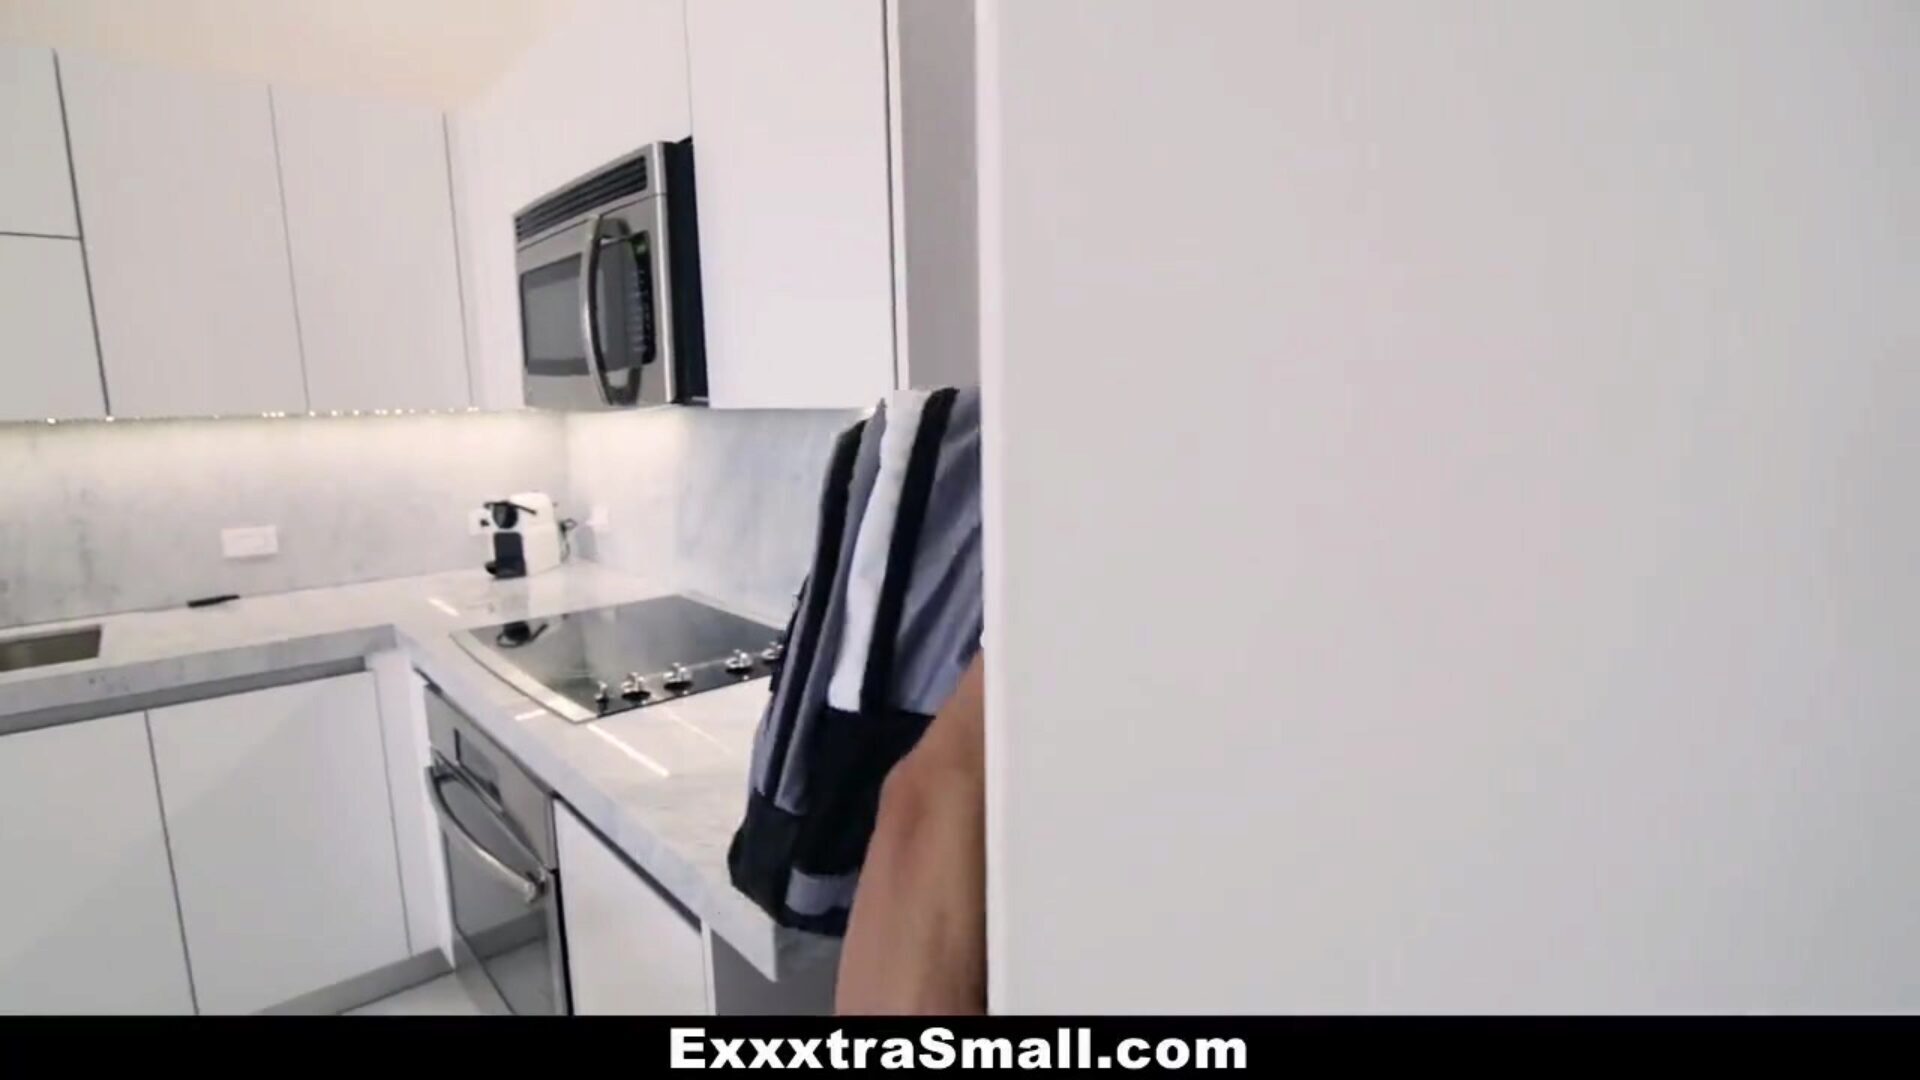 exxxtrasmall - hoe een pikachu te vangen en te neuken